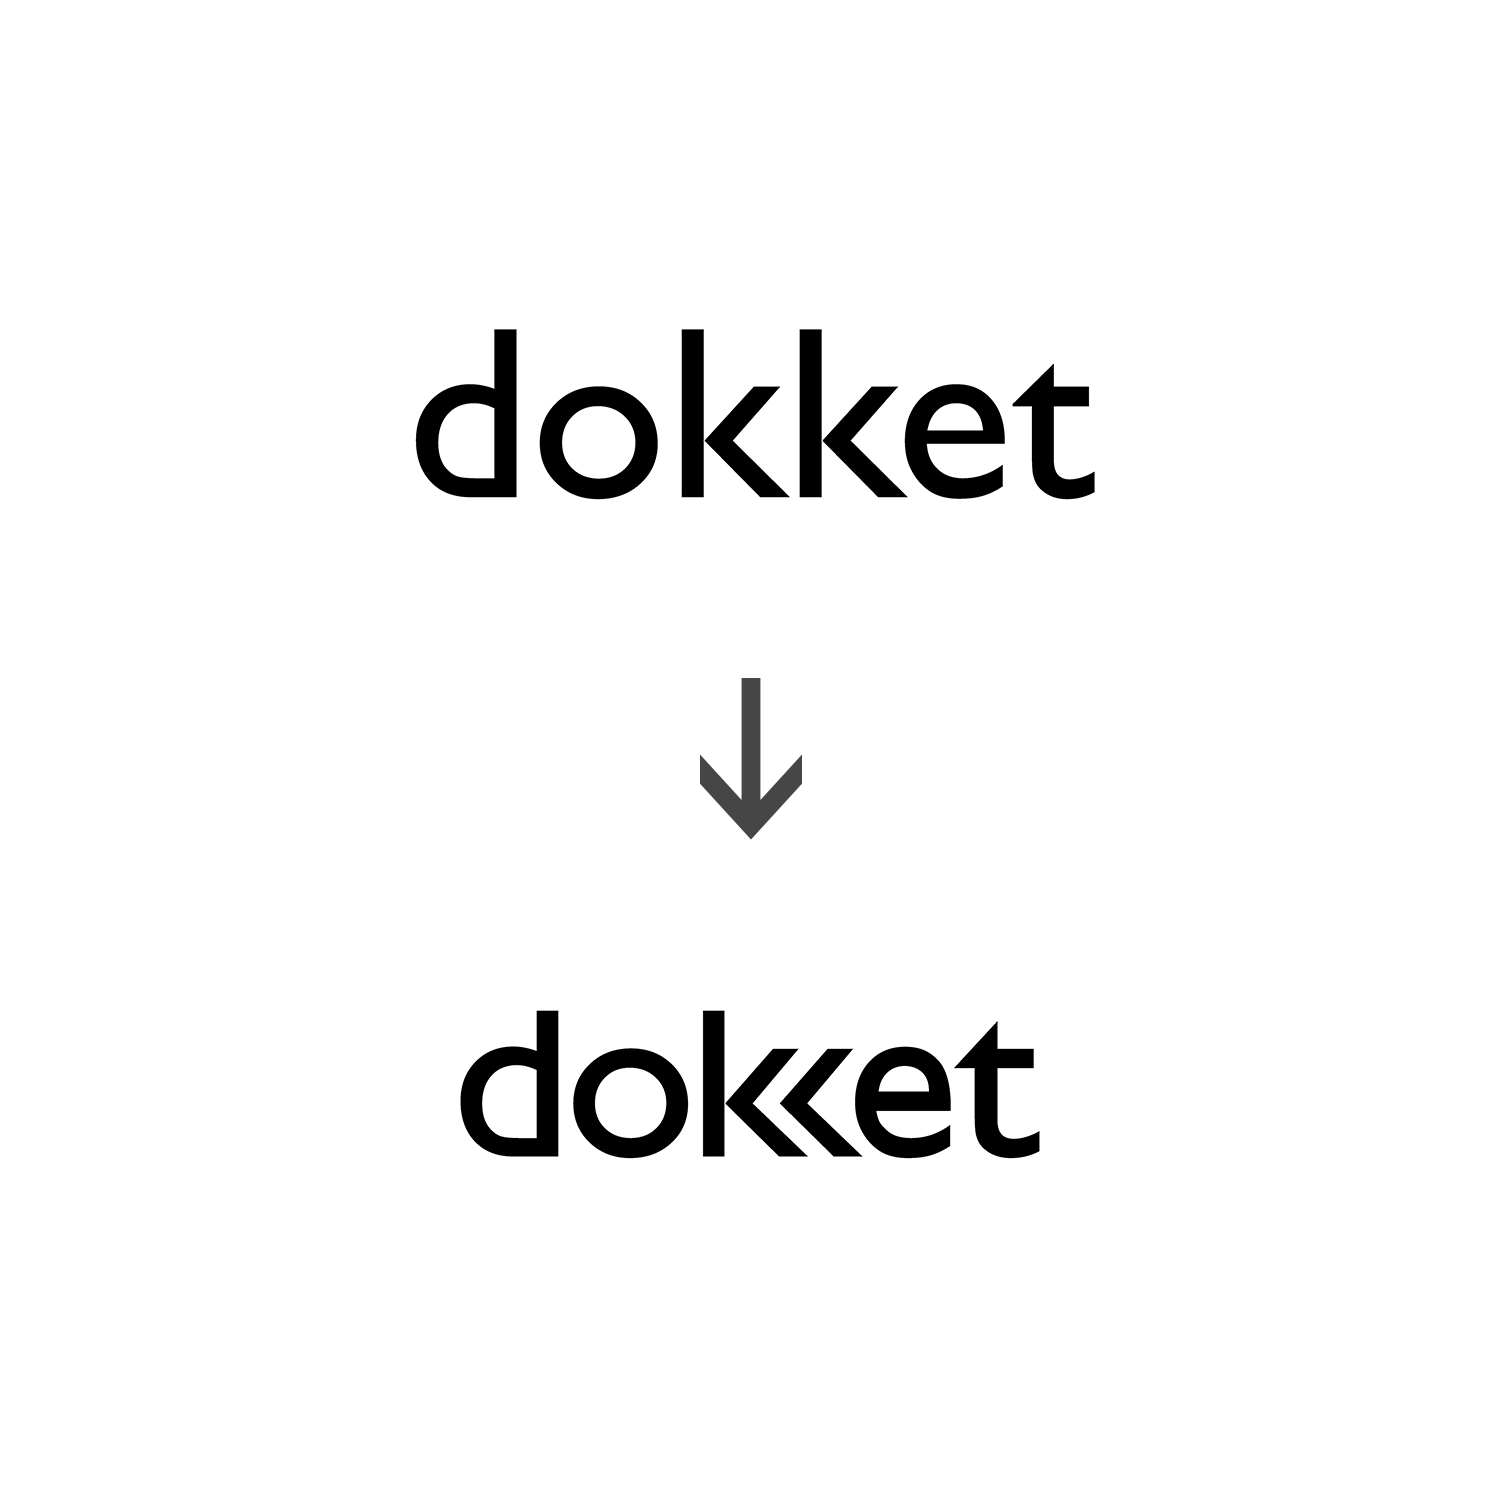 dokket-joanna-poltorak-design